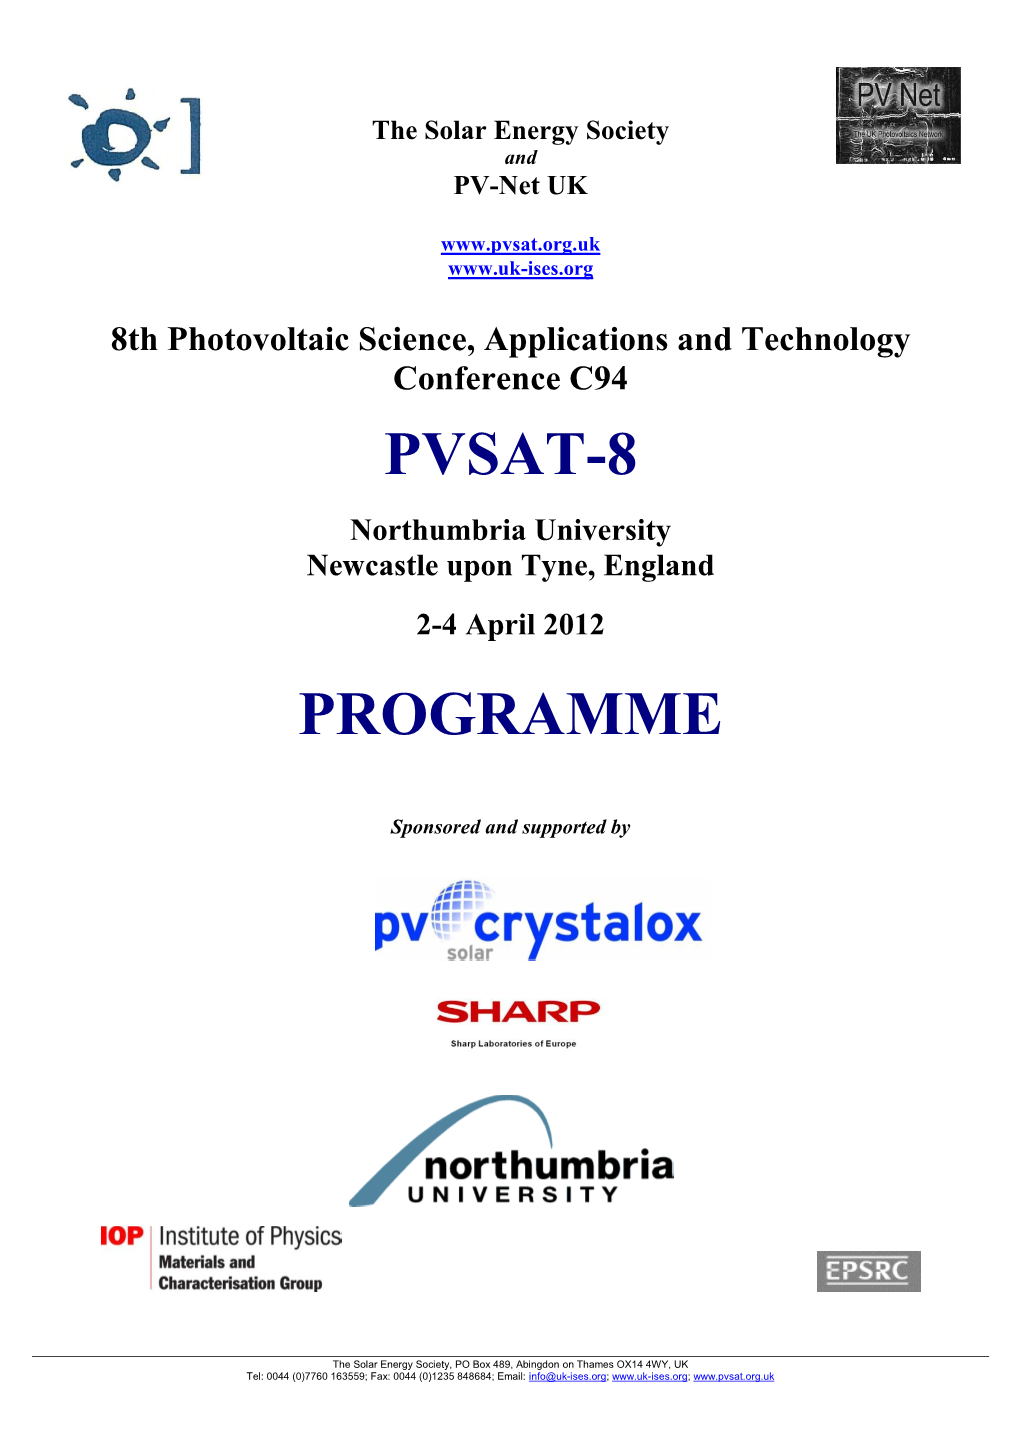 PVSAT-8 Programme 26-03-12.Pdf